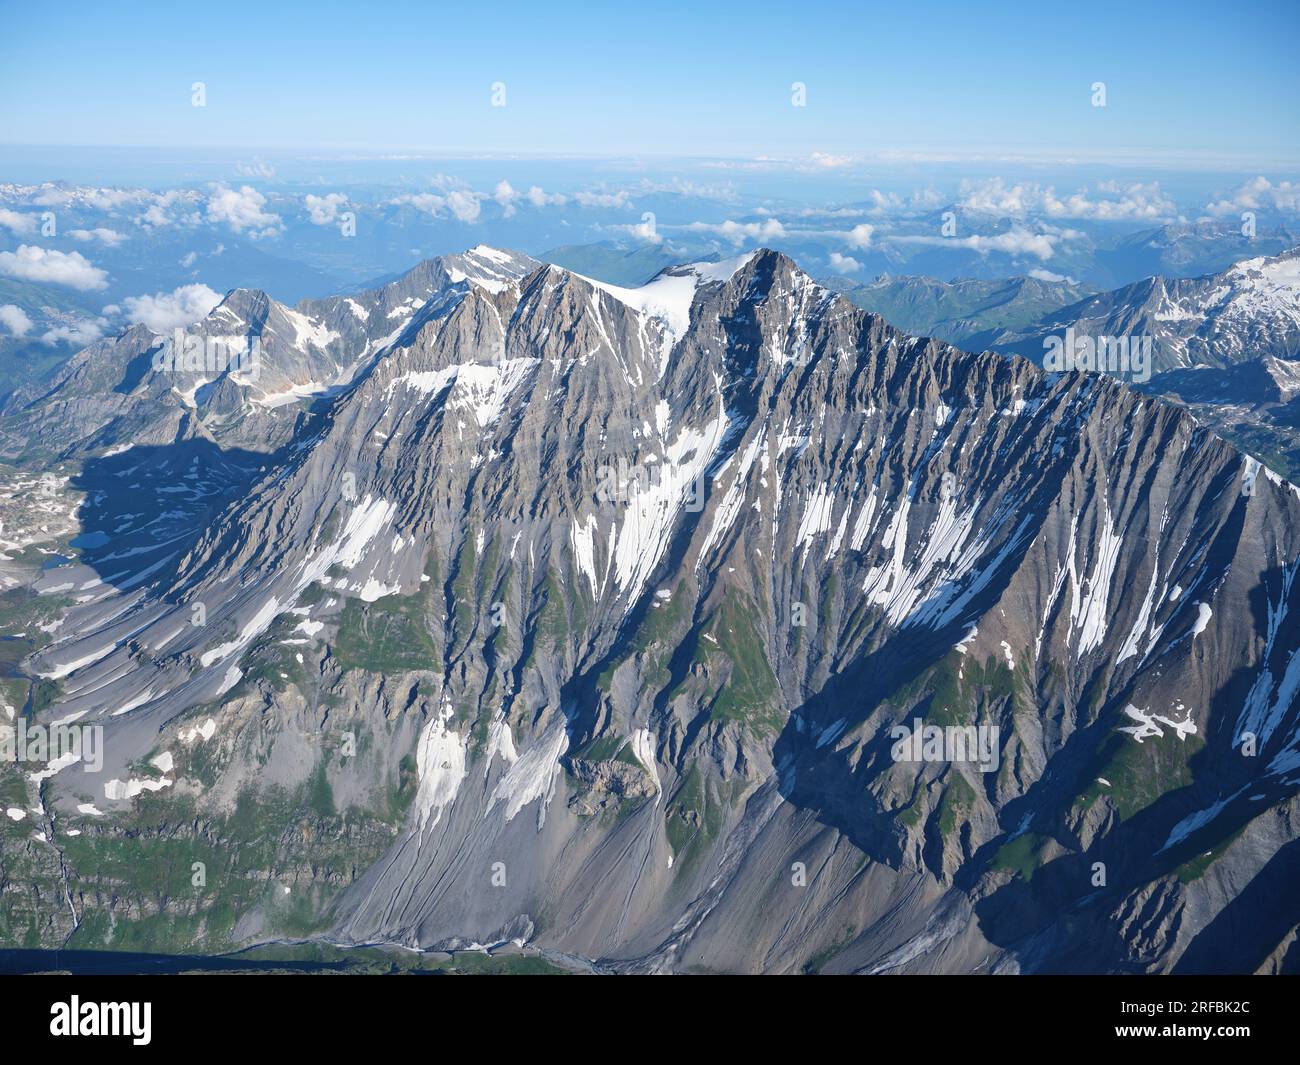 LUFTAUFNAHME. Südseite des Mount Grande Casse (Höhe: 3855m m), dies ist der höchste Gipfel im Vanoise Massiv. Auvergne-Rhône-Alpes, Frankreich. Stockfoto